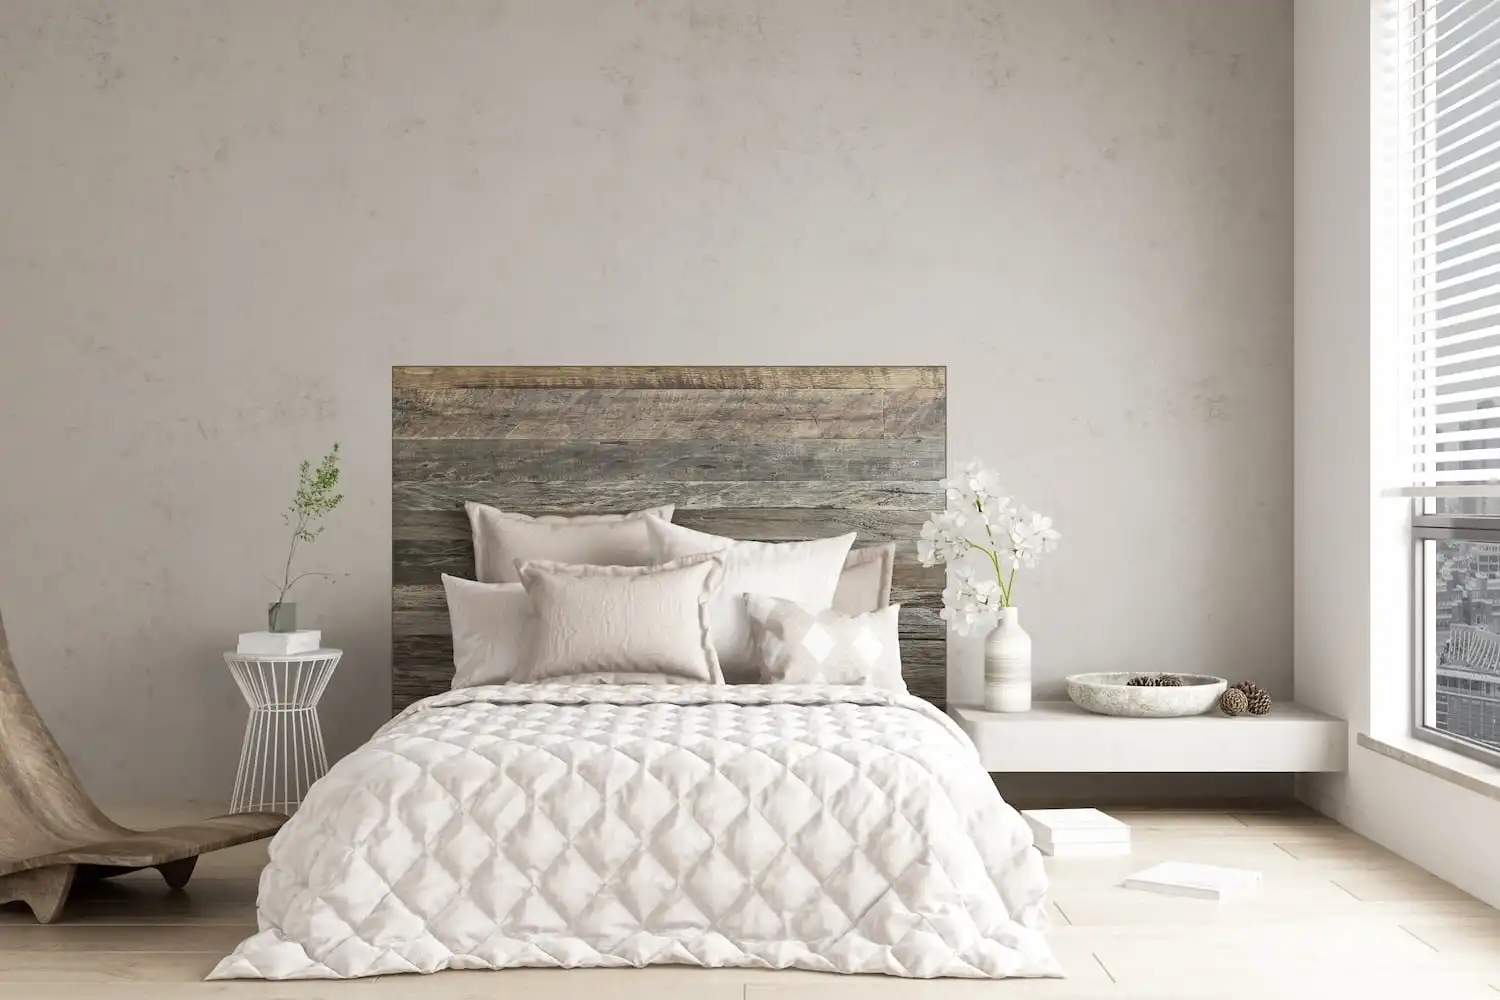 Une chambre minimaliste avec une tête de lit en bois rustique et une literie aux tons neutres.